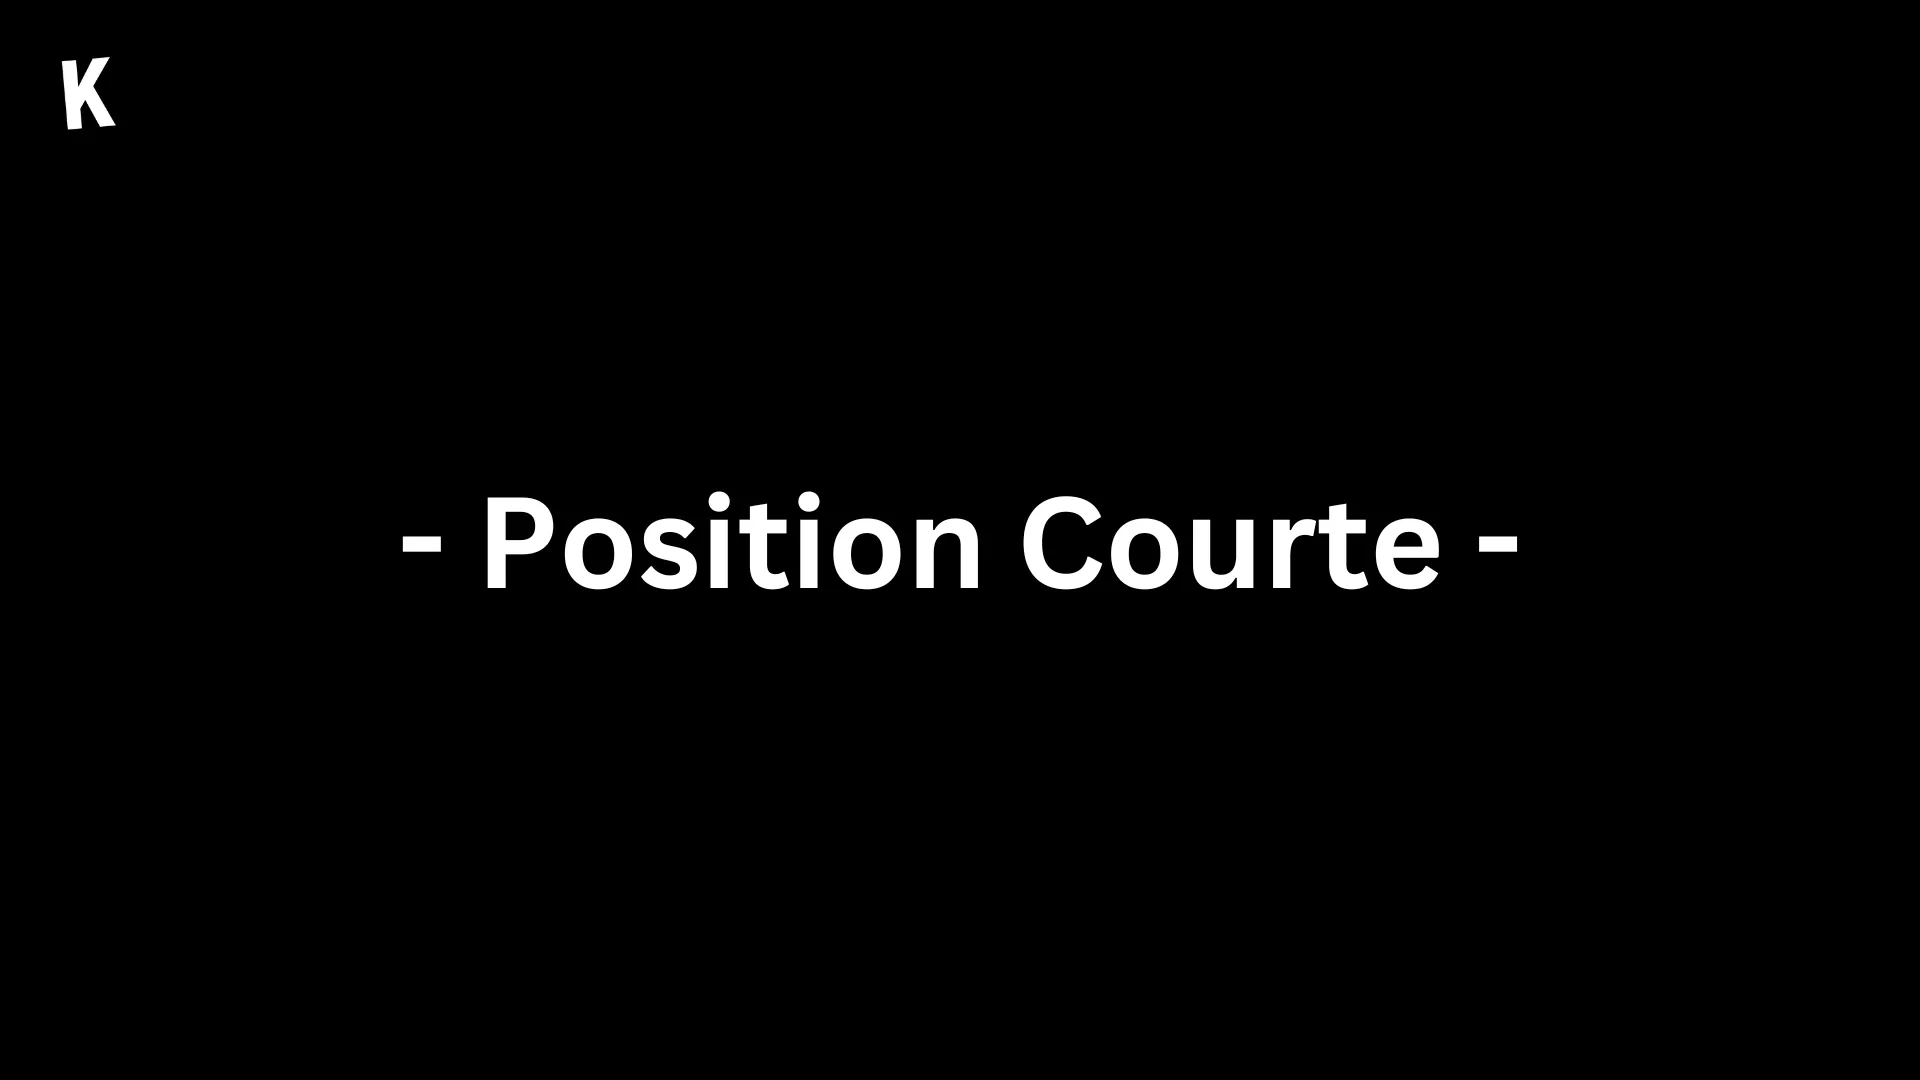 Position courte